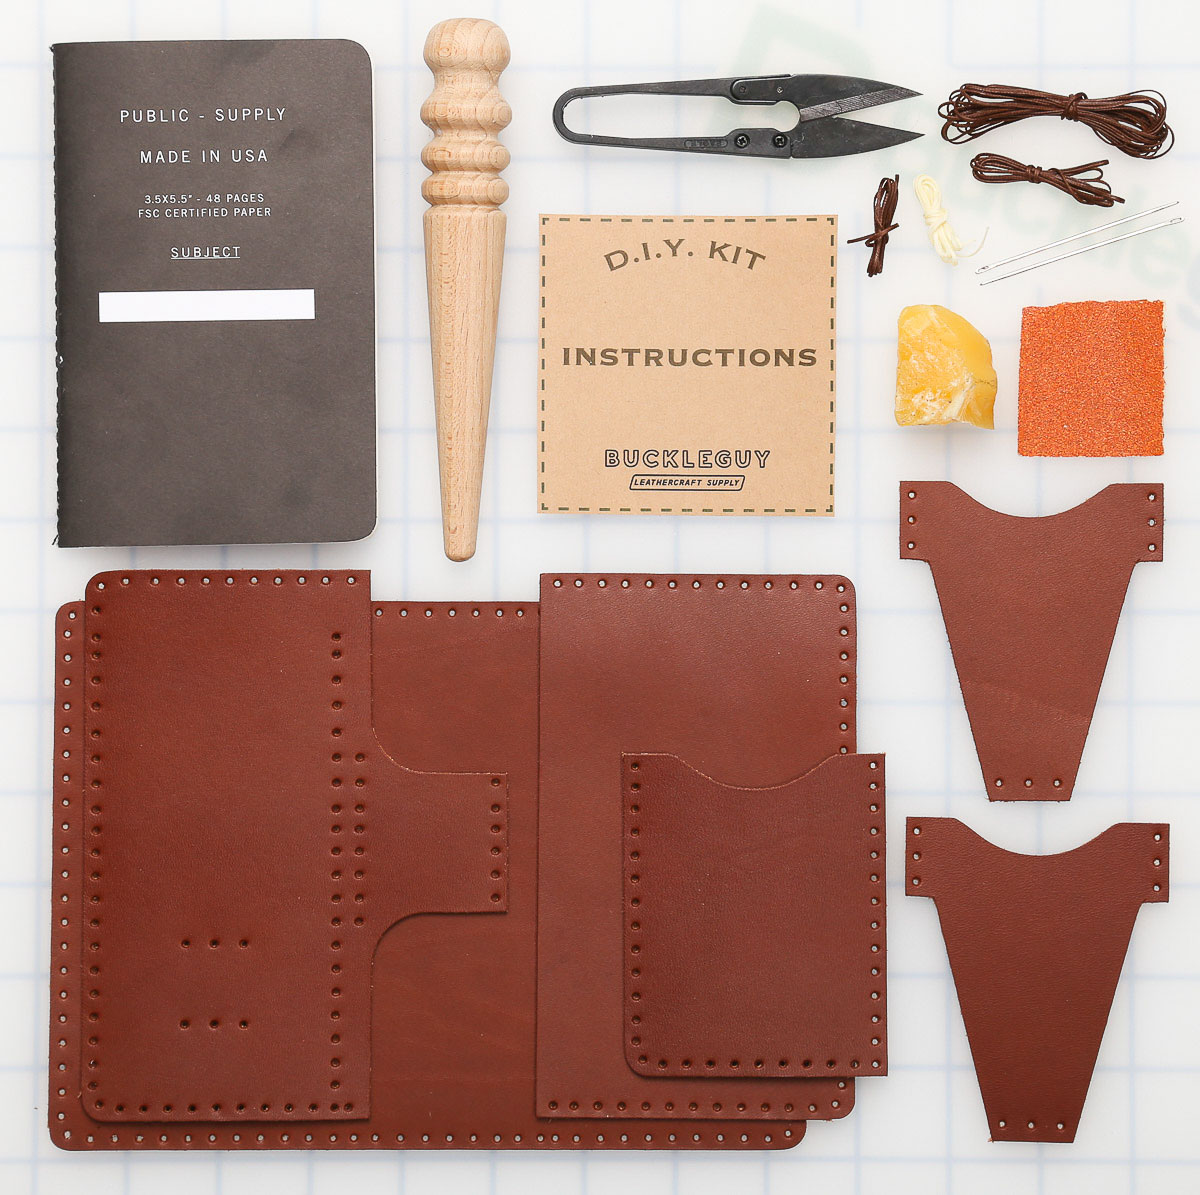 DIY Kit Leather / DIY Leather Set Box / Homemade Leather Gift / Minimalism  / Gift Idea / Craft Box Leather / Leather Making Kit 